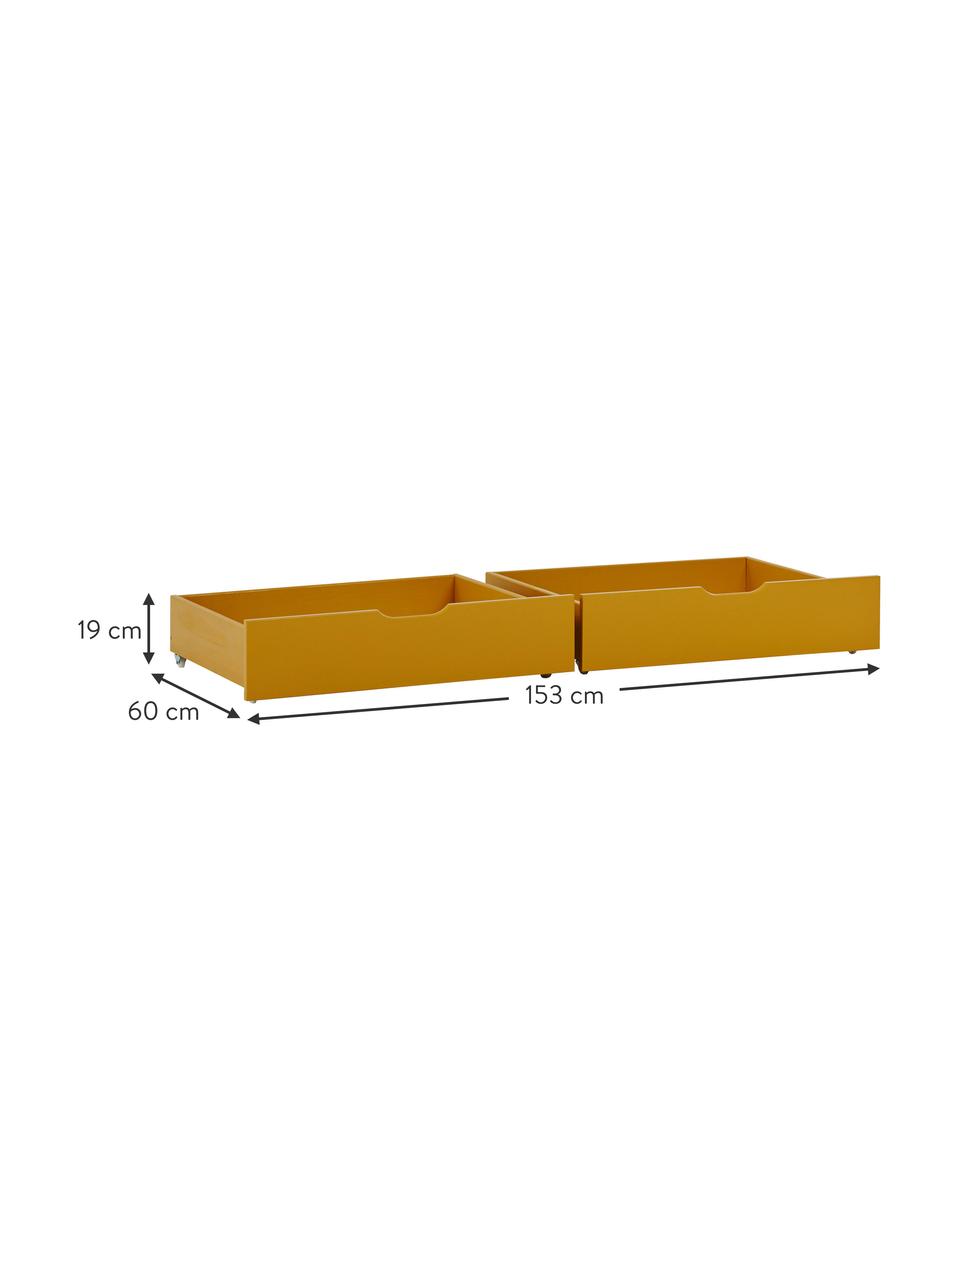 Zásuvky Eco Comfort, 2 ks, MDF deska (dřevovláknitá deska střední hustoty), certifikace FSC, Žlutá, Š 76 cm, H 60 cm